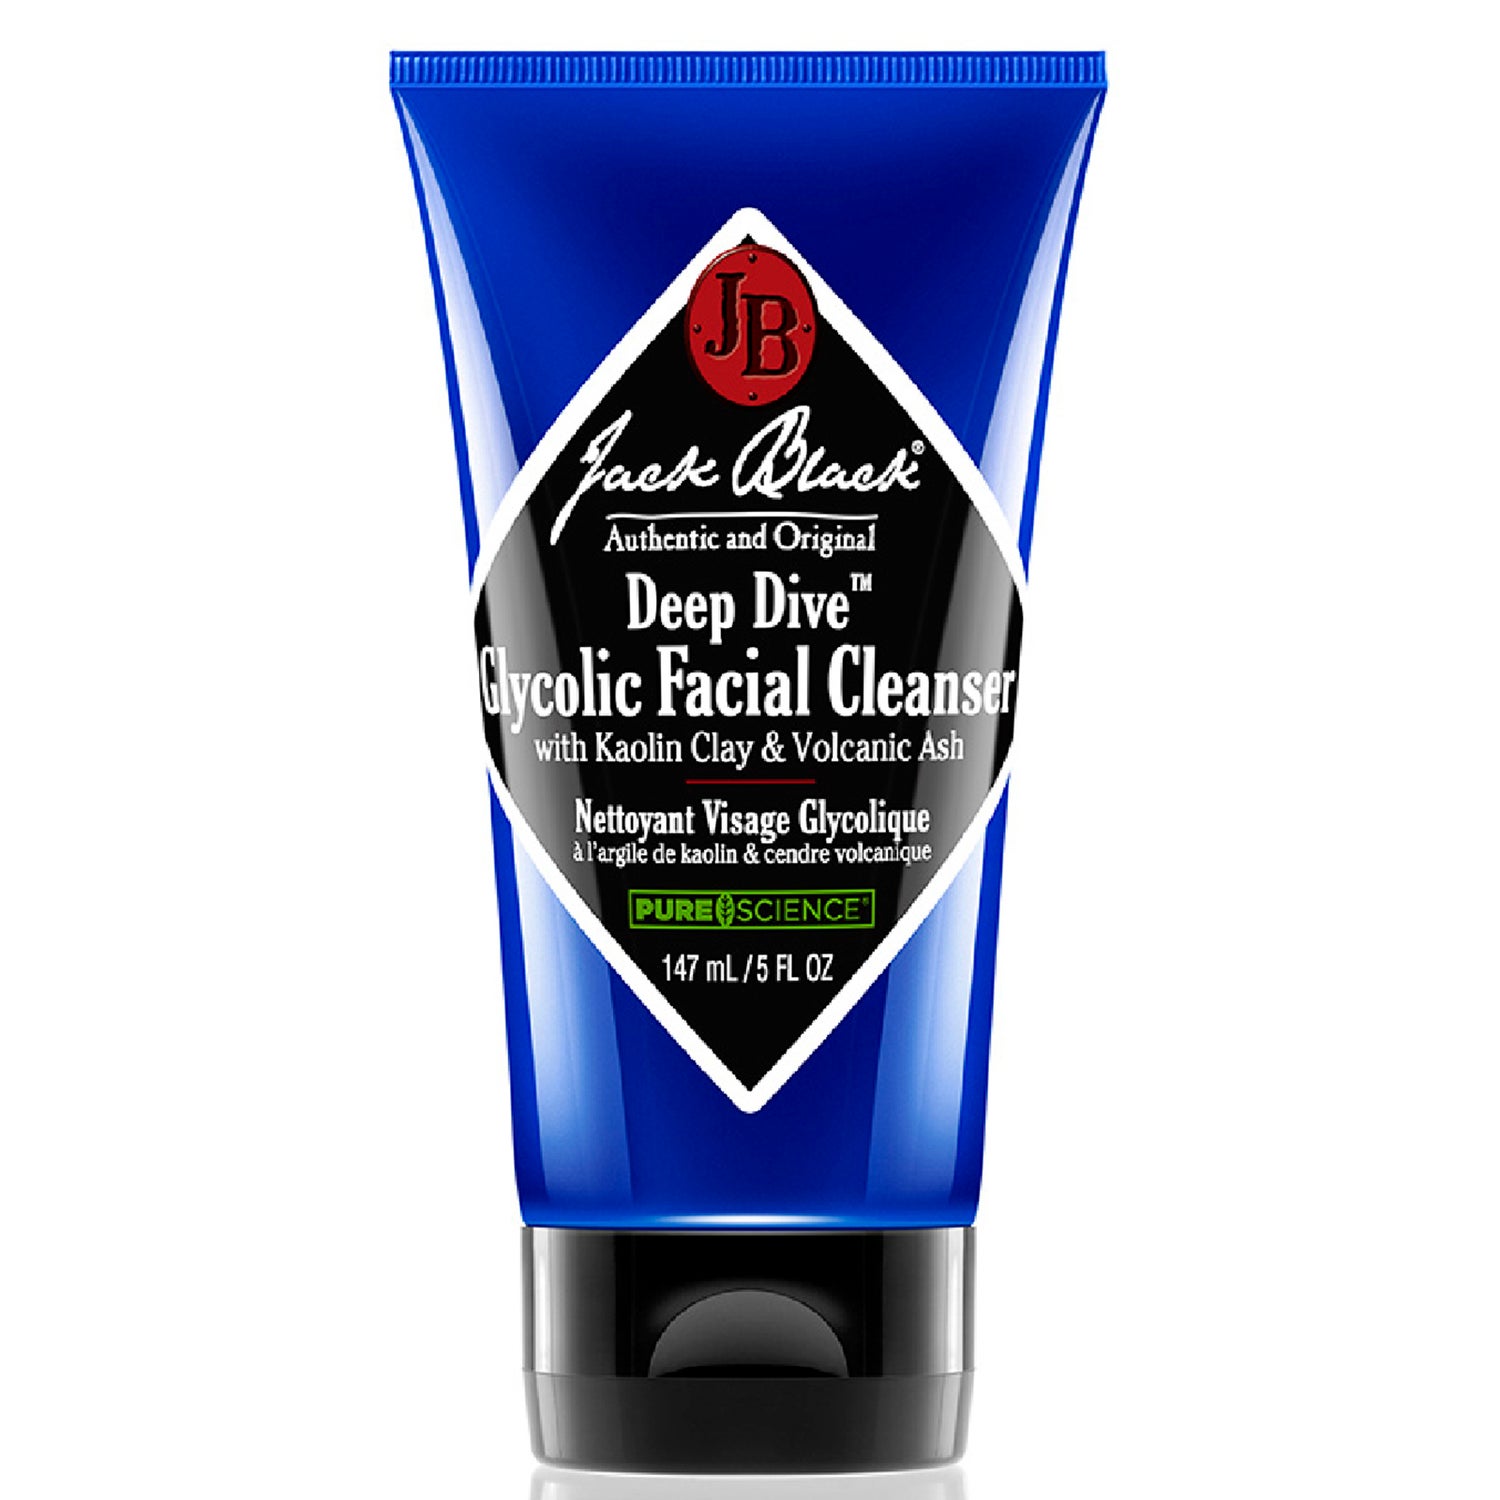 Producto de limpieza facial Deep Dive Glycolic de Jack Black